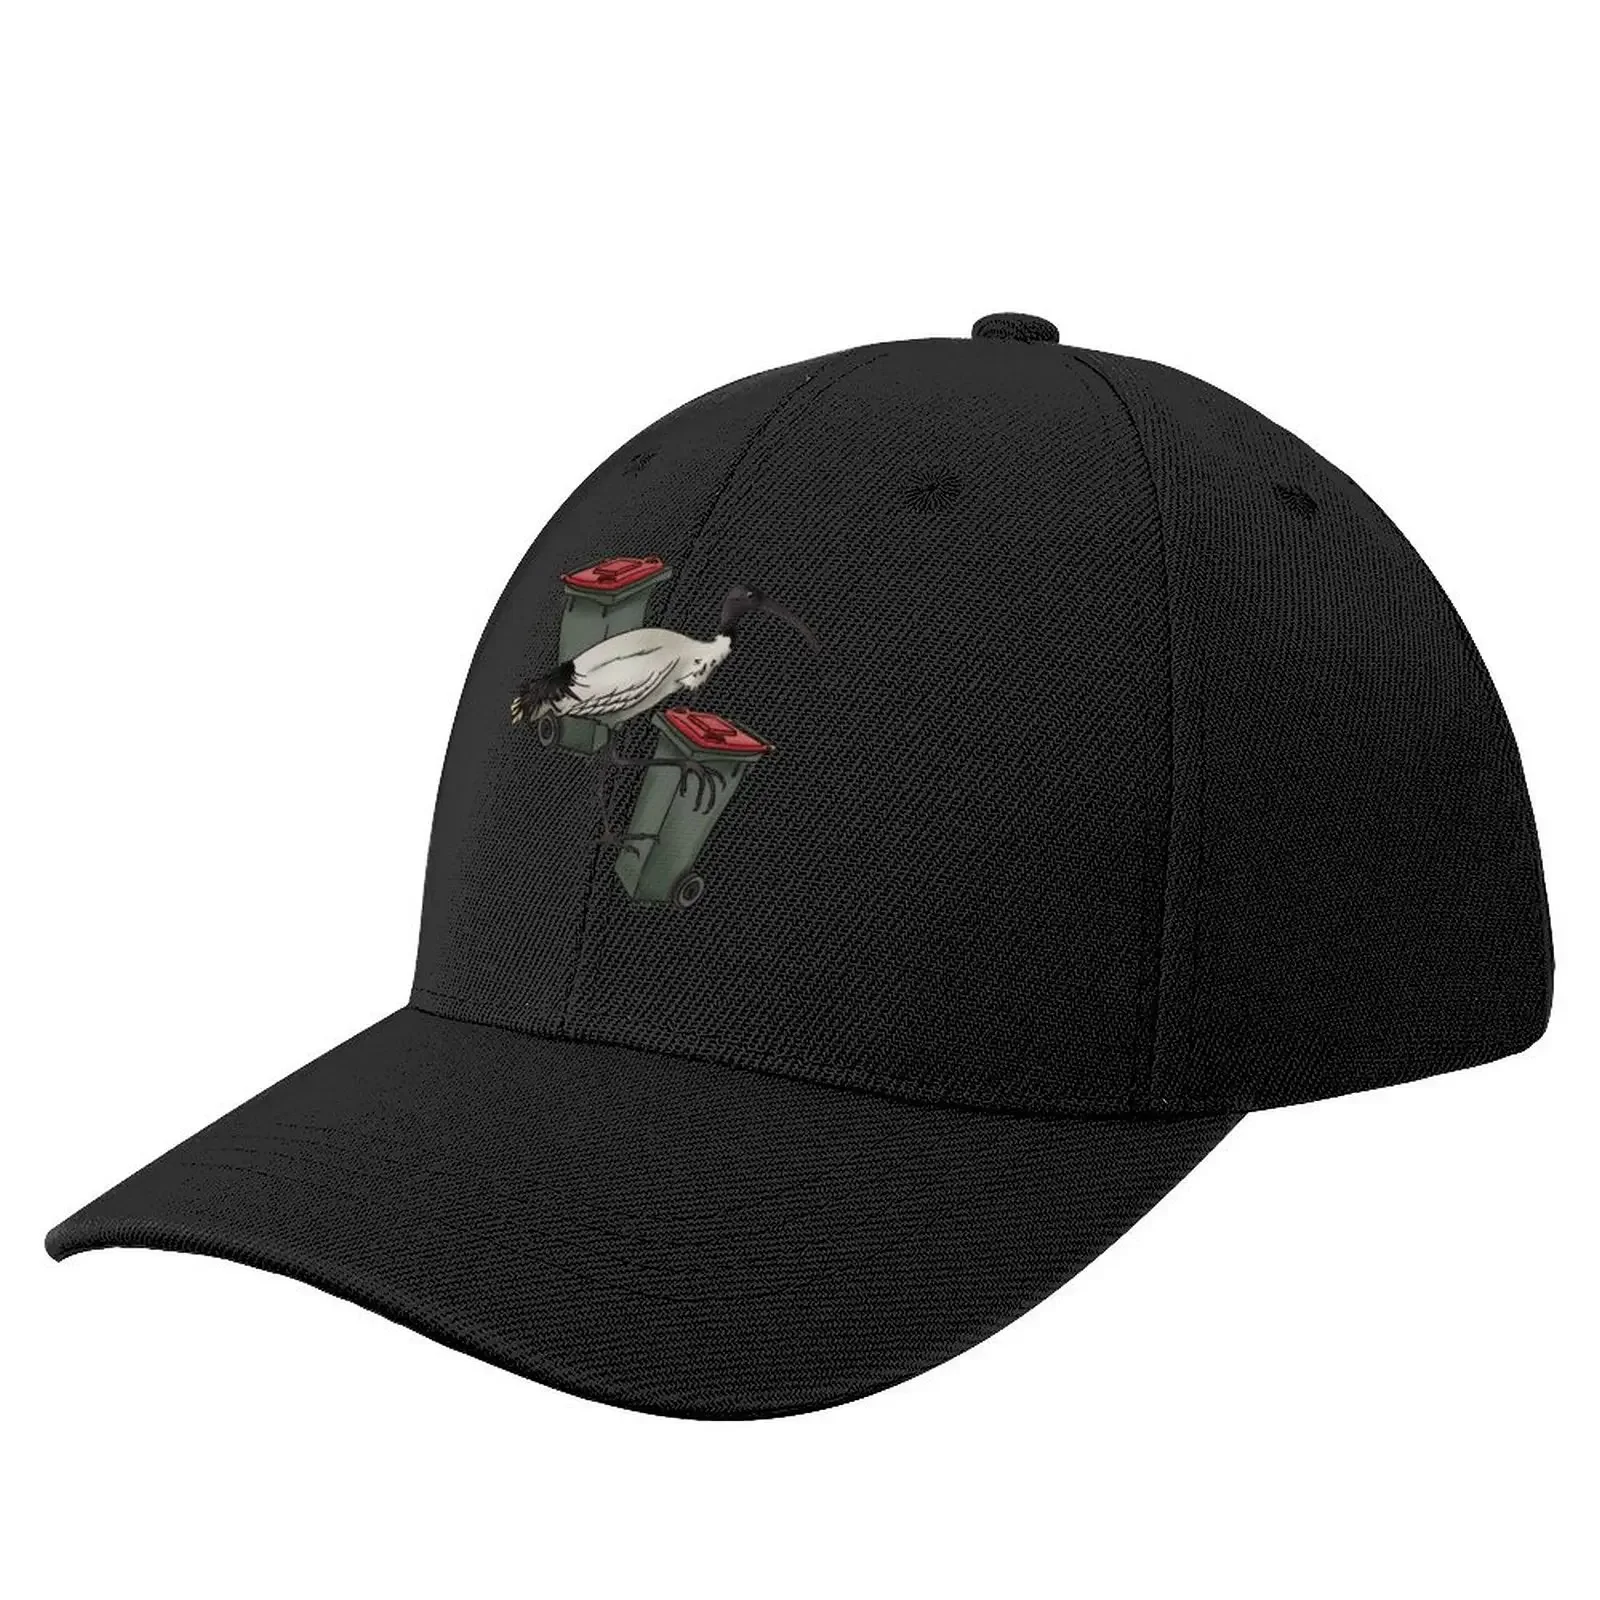 

Бейсболка с изображением одинокого Бина курицы, головной убор, забавная модная мужская и женская шапка